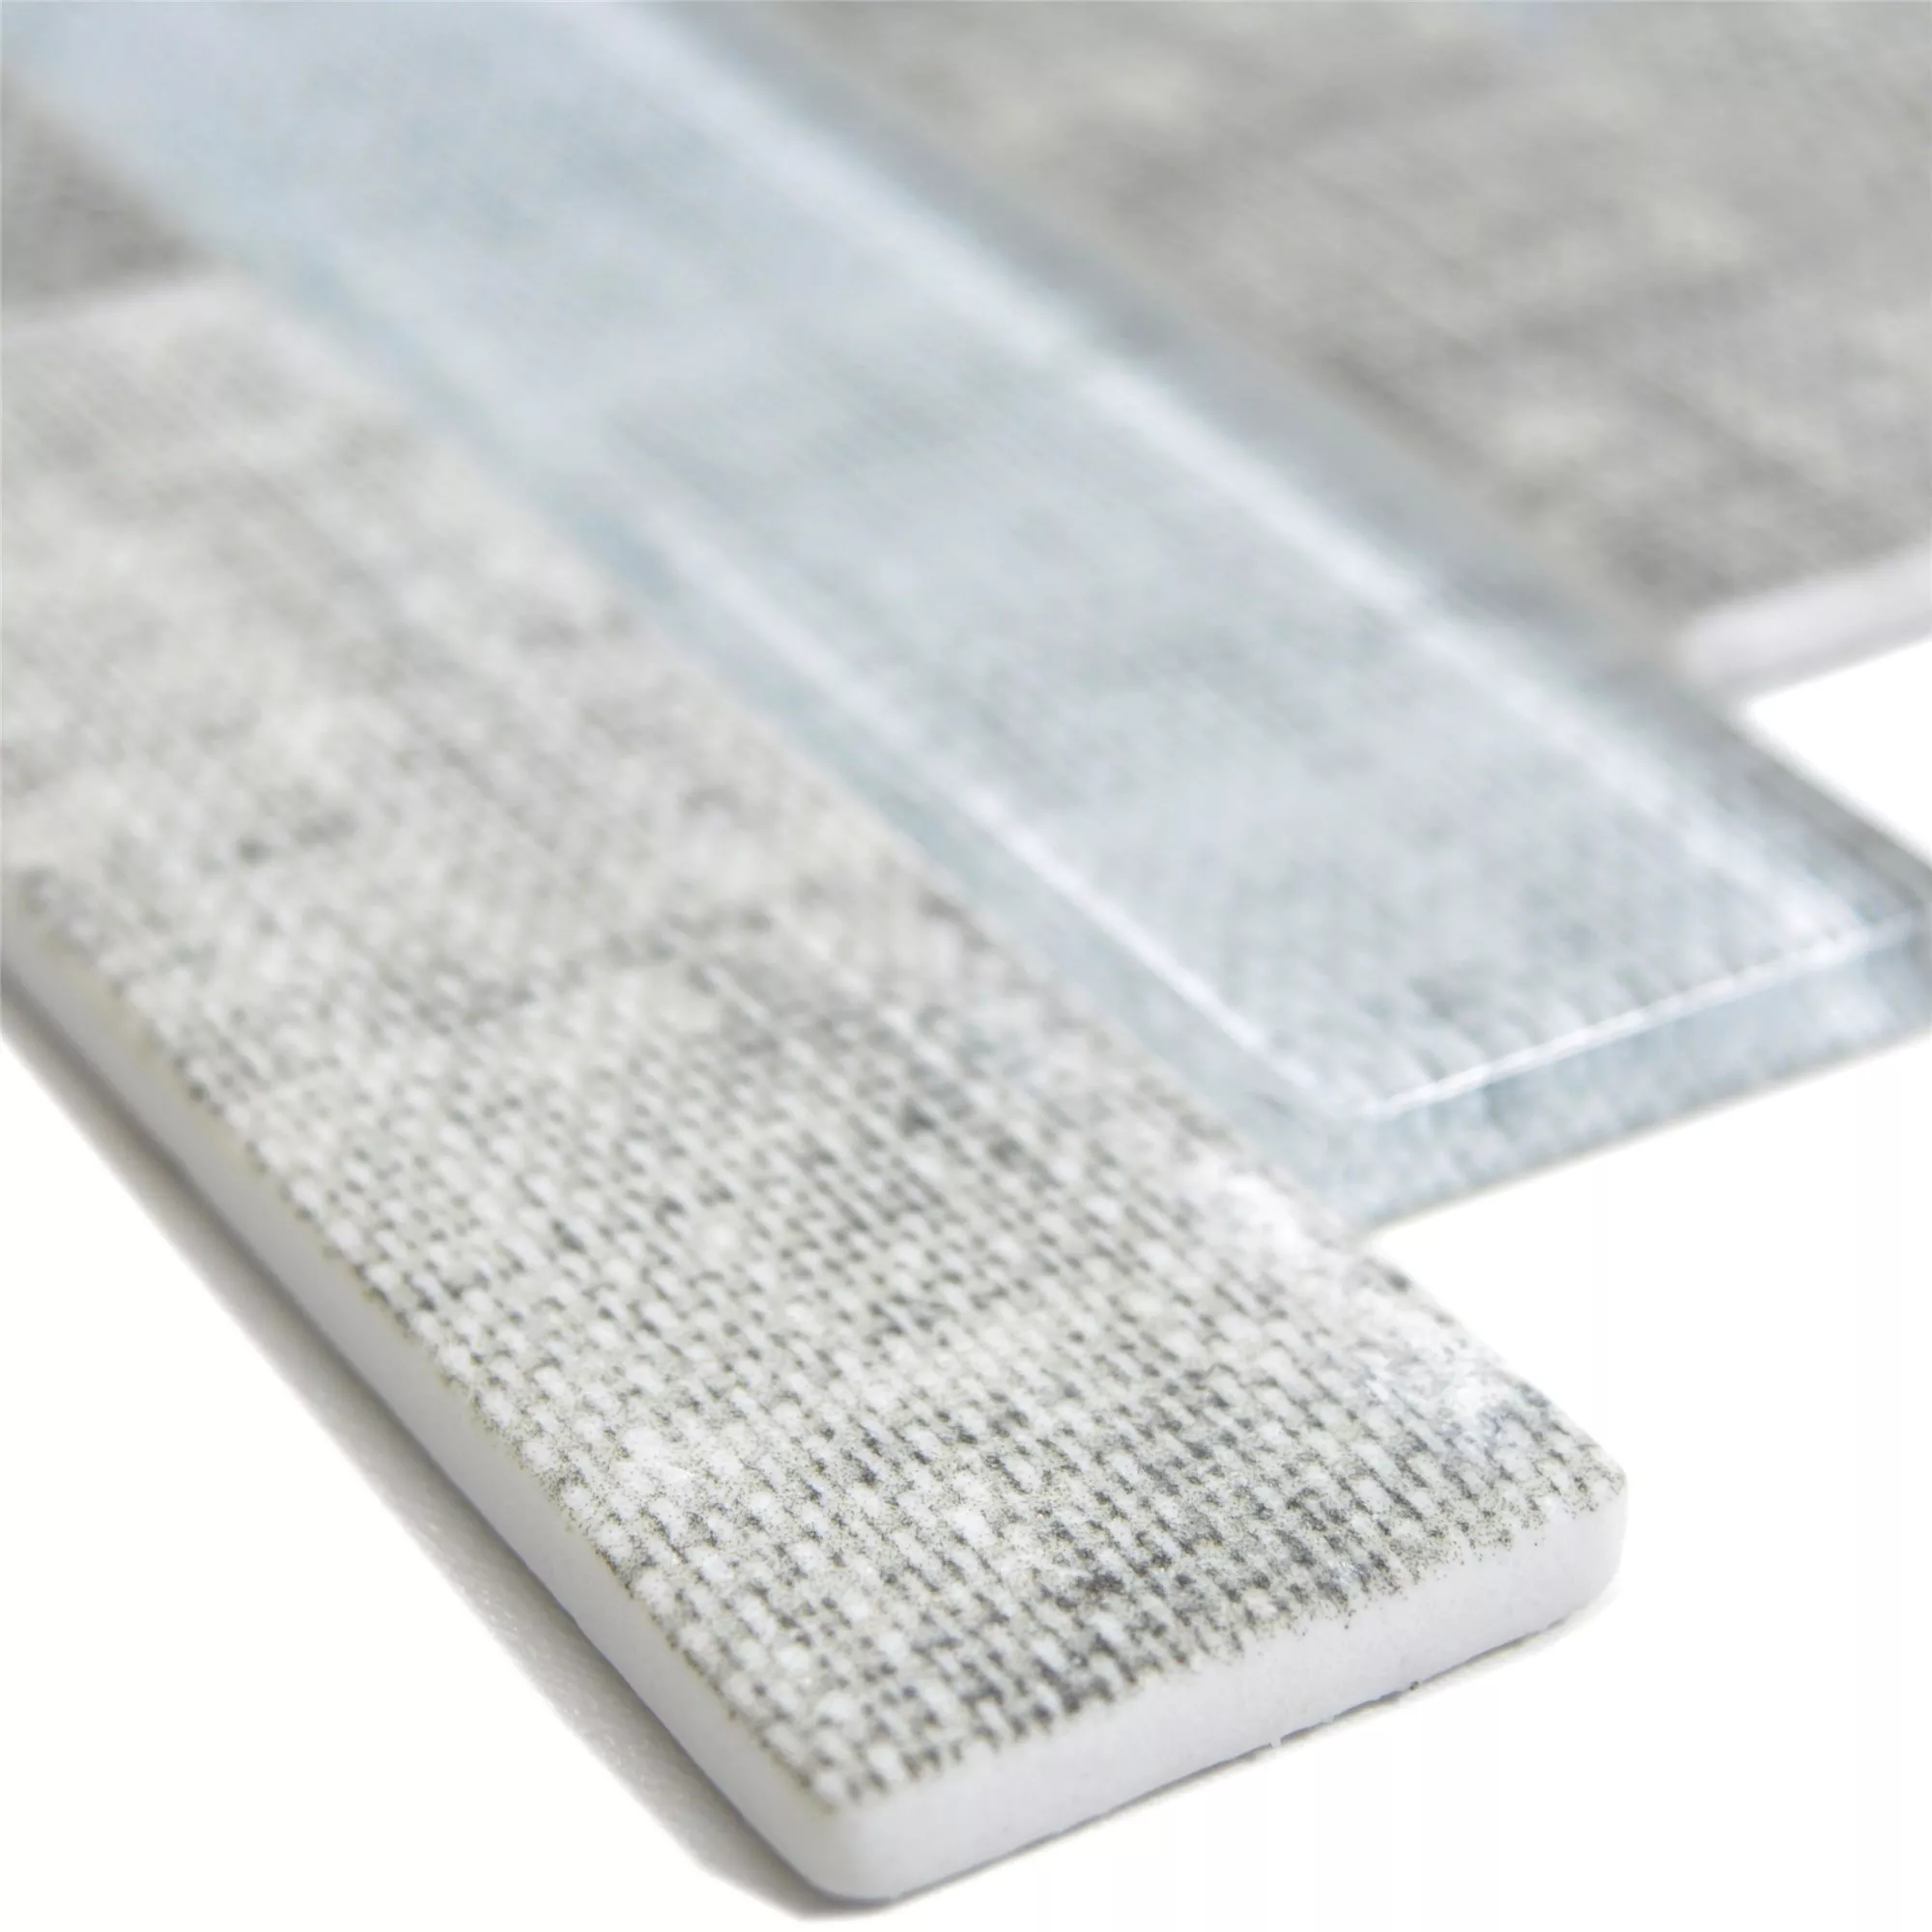 Muster von Glasmosaik Fliesen Lyonel Textil Optik Brick Grau